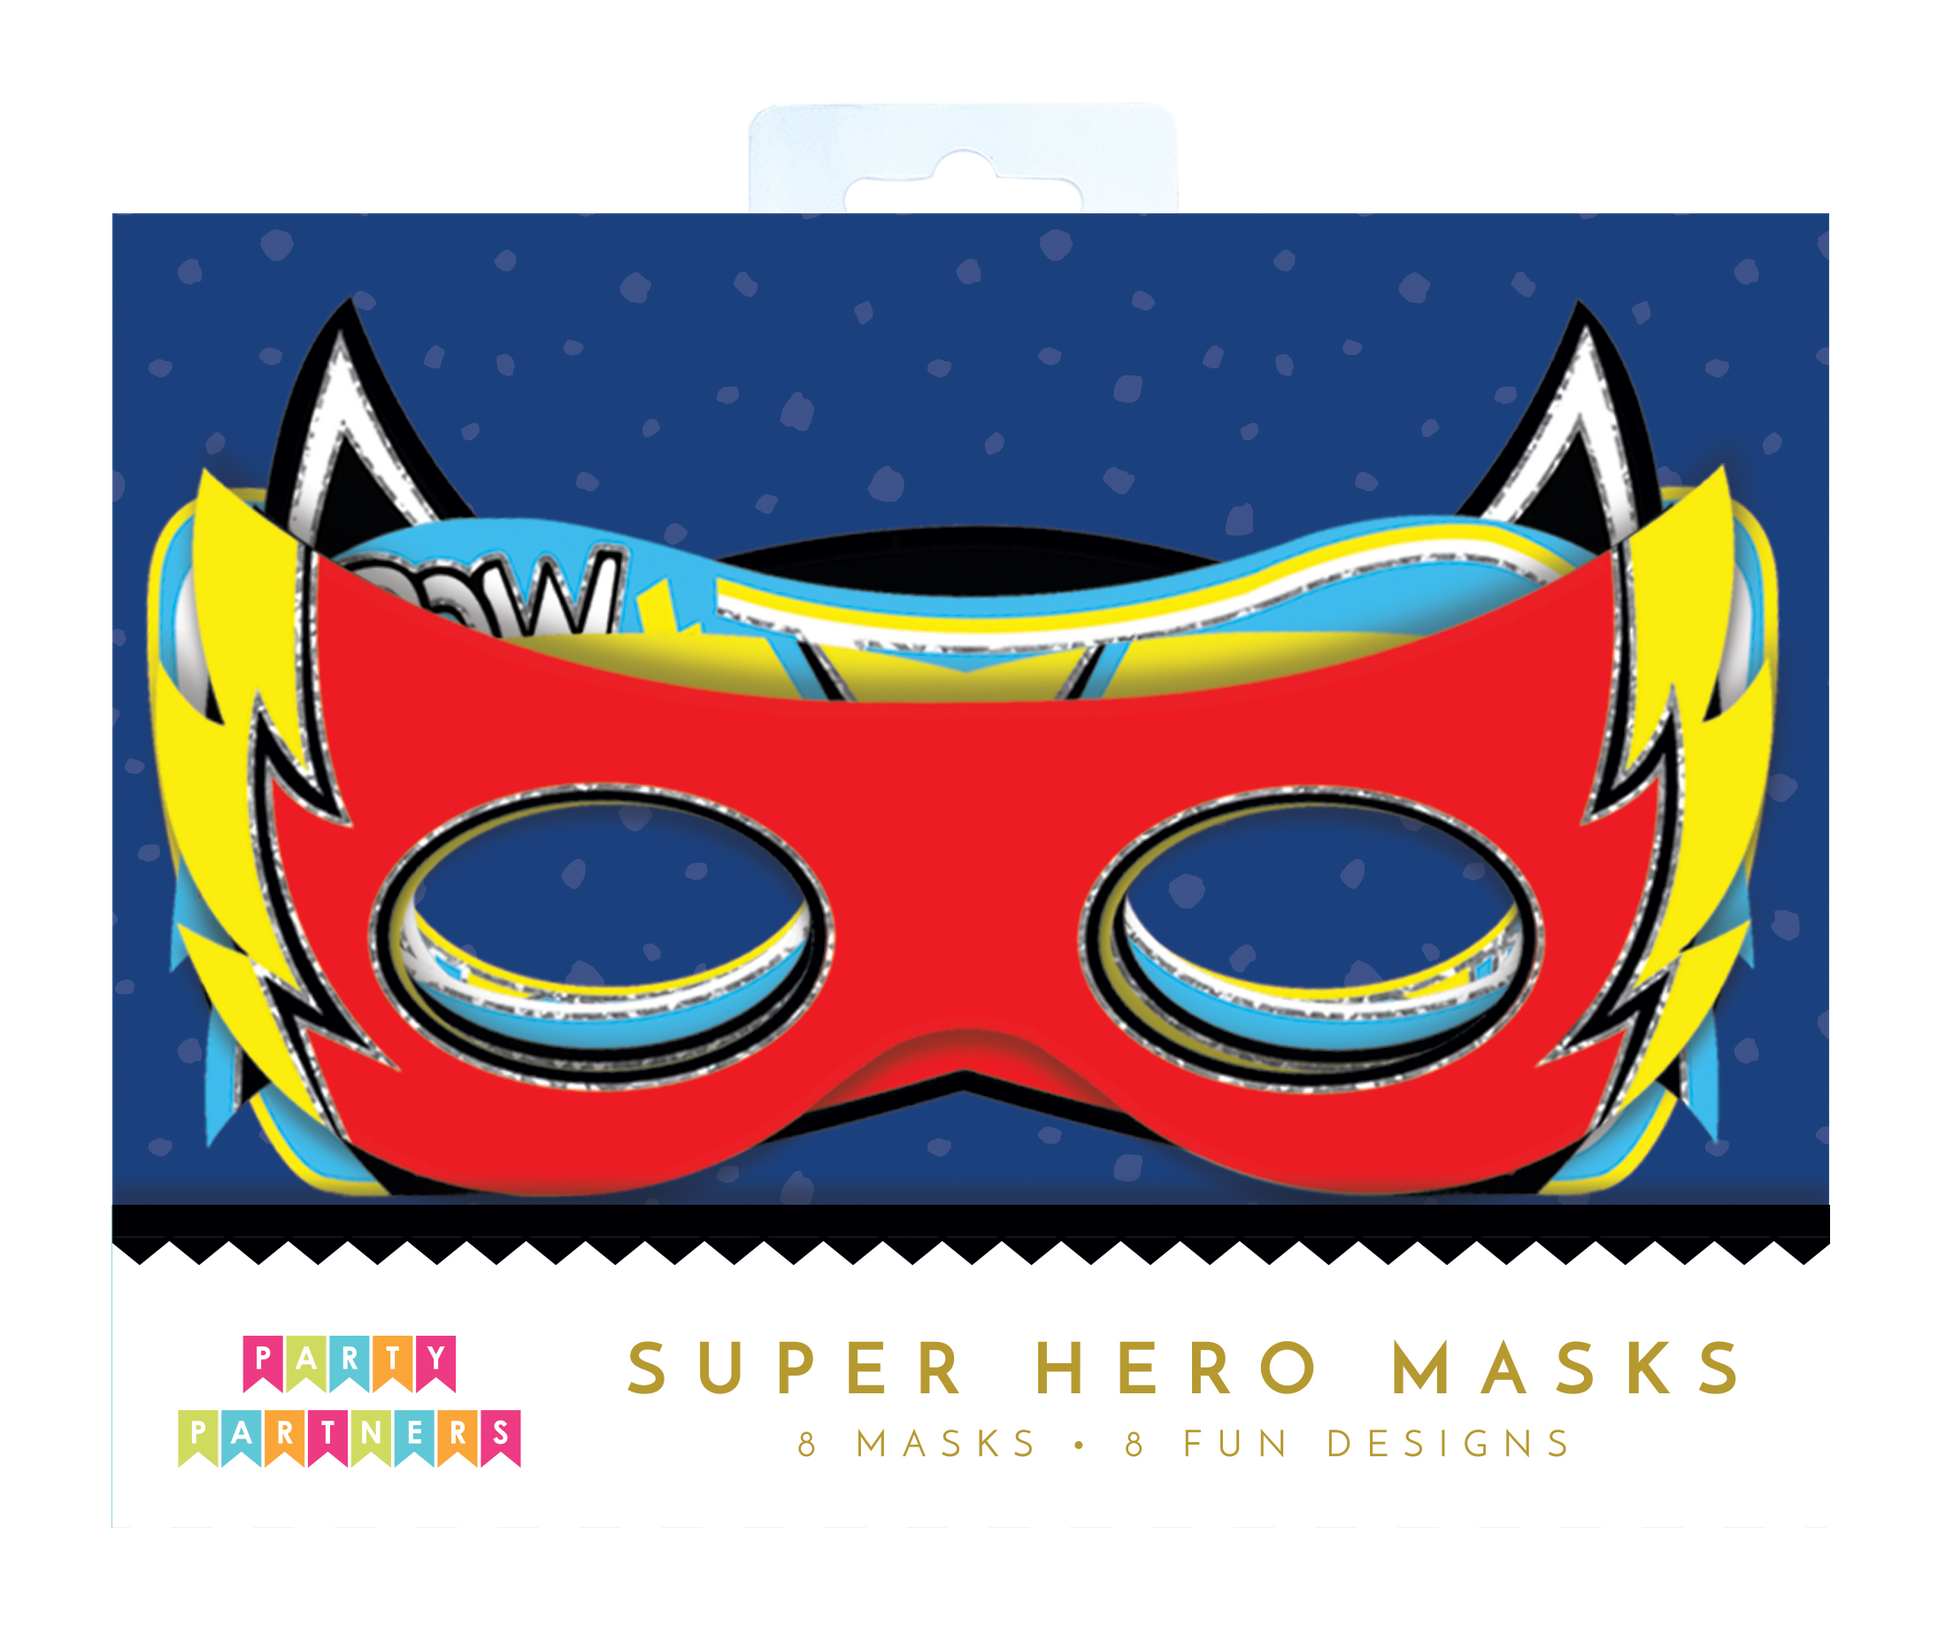 Super hero masks party partners â